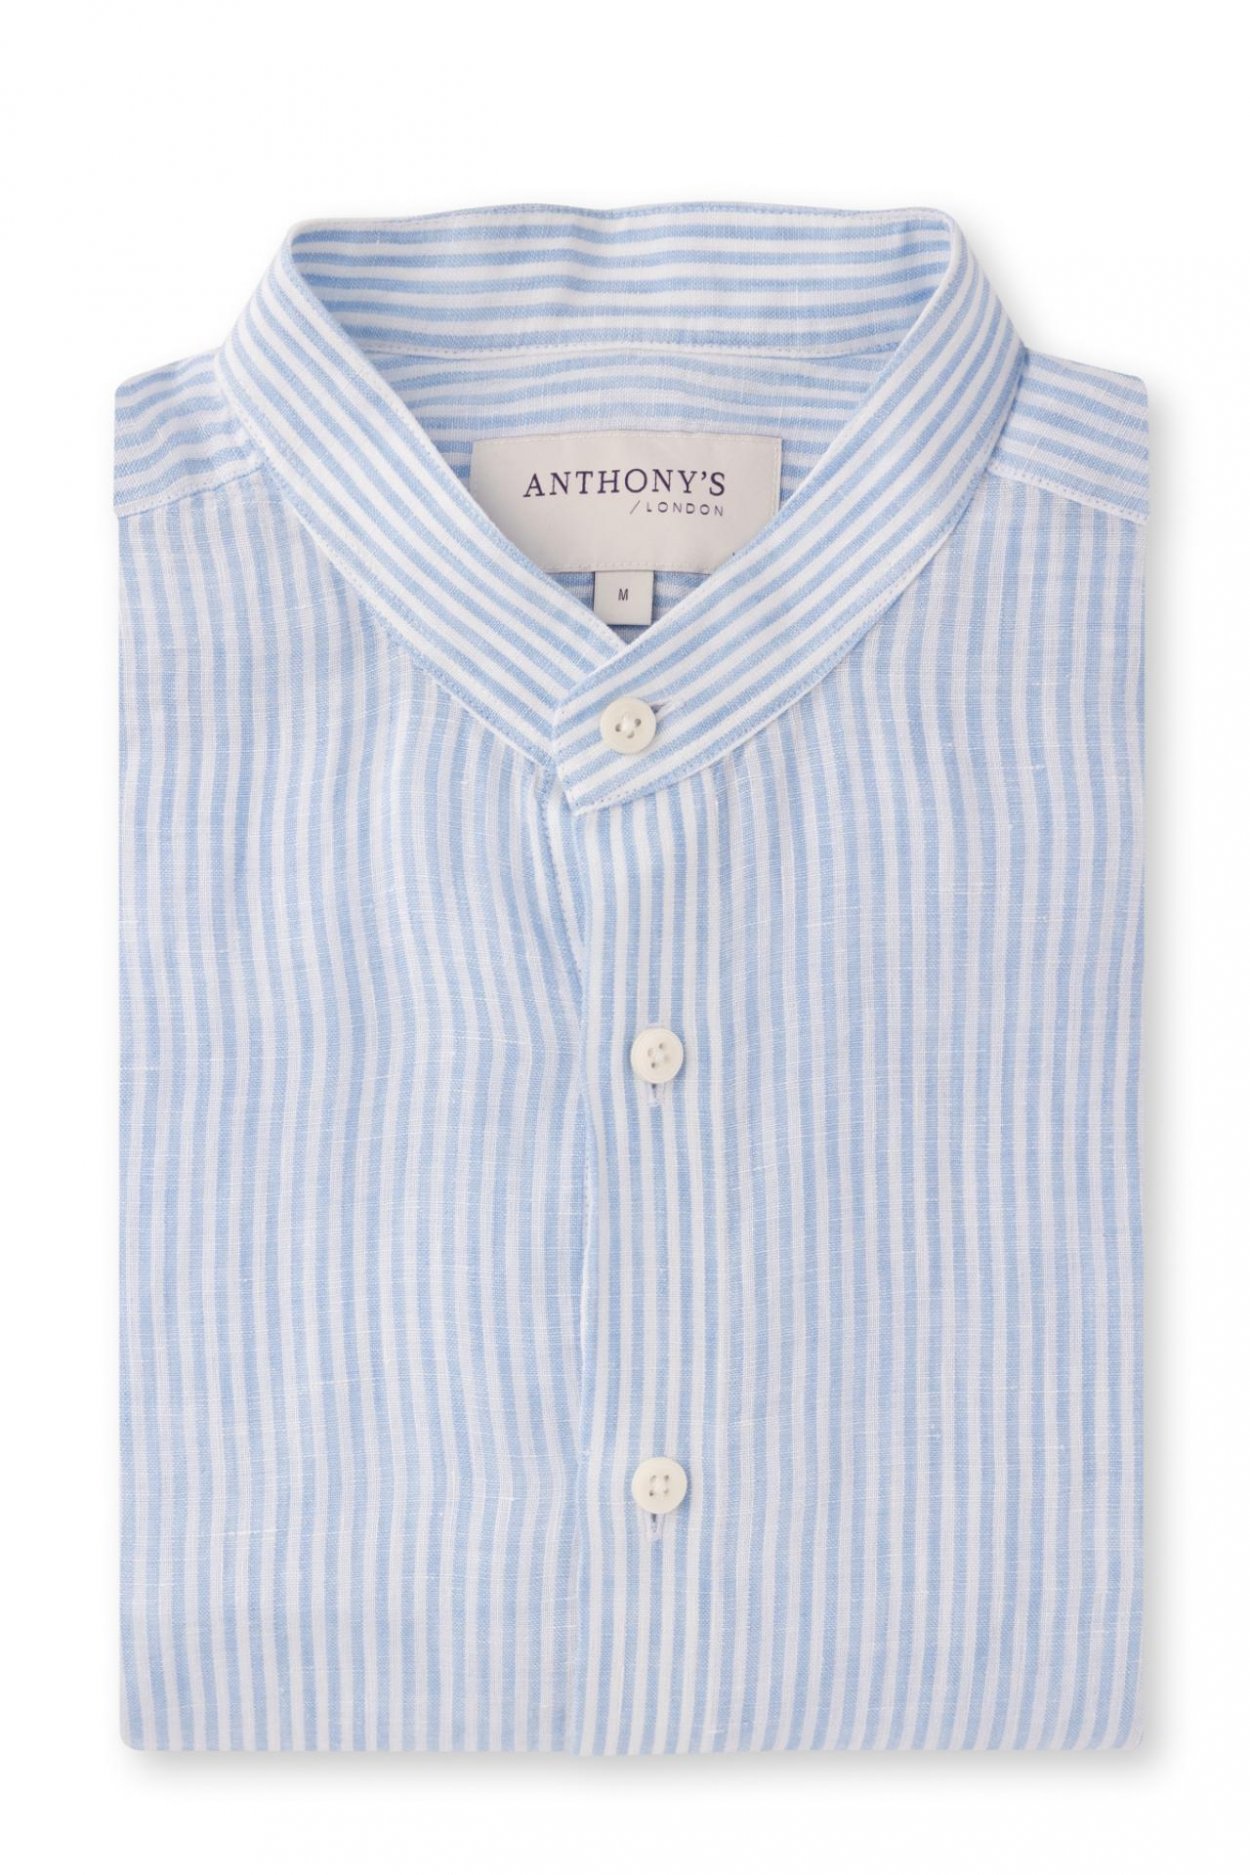 Pánská modrobílá lněná košile s proužkem